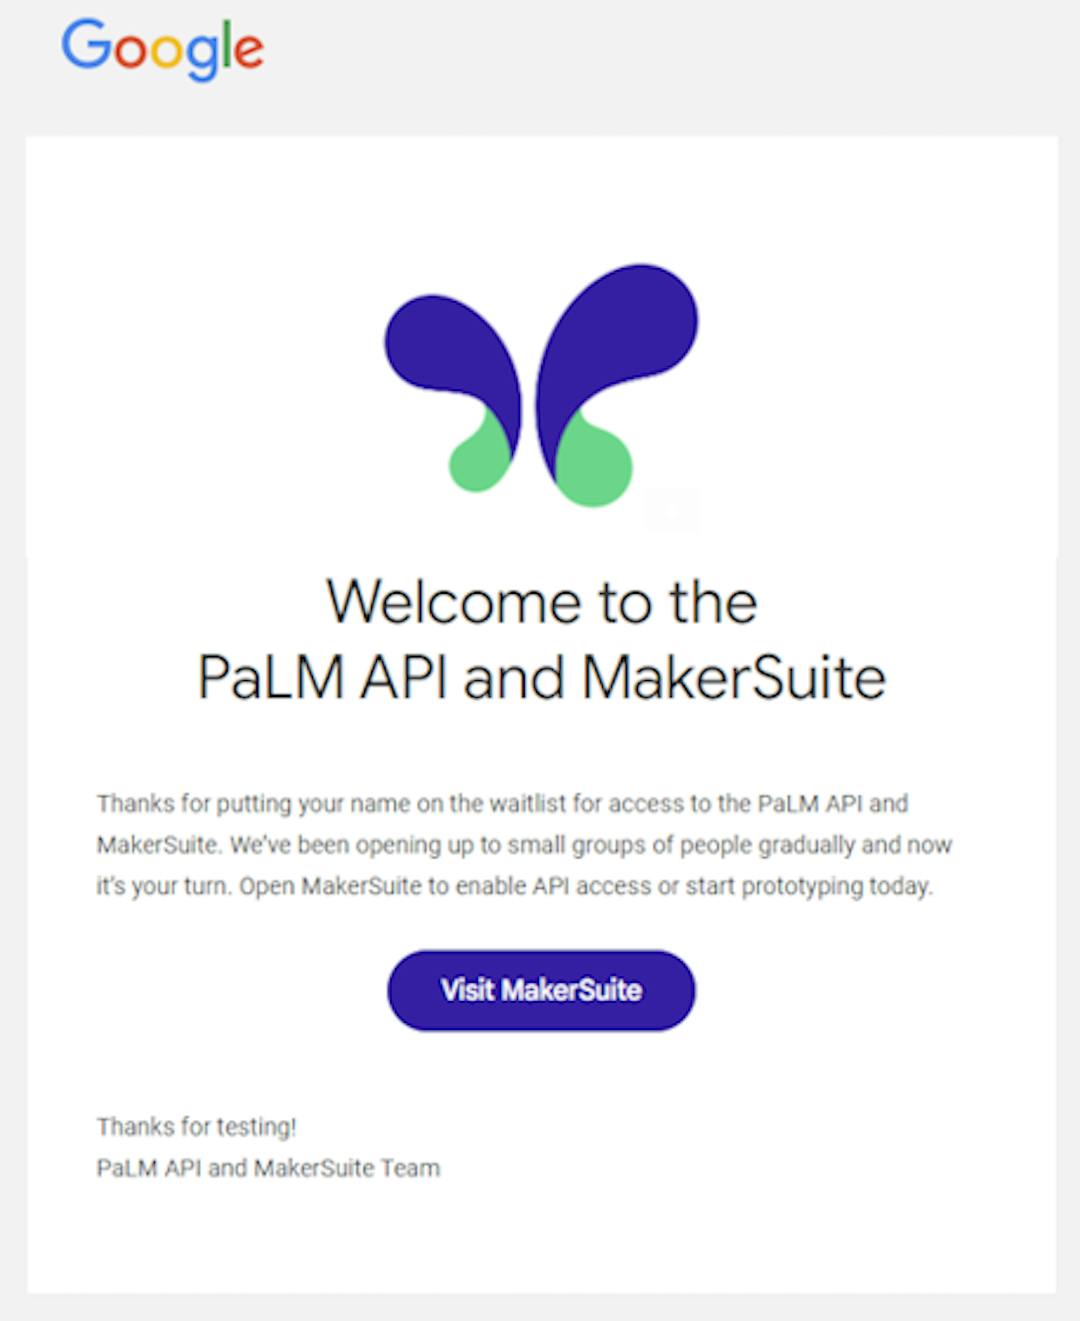 Correo electrónico de bienvenida de Google sobre el acceso a PaLM API y MakerSuite